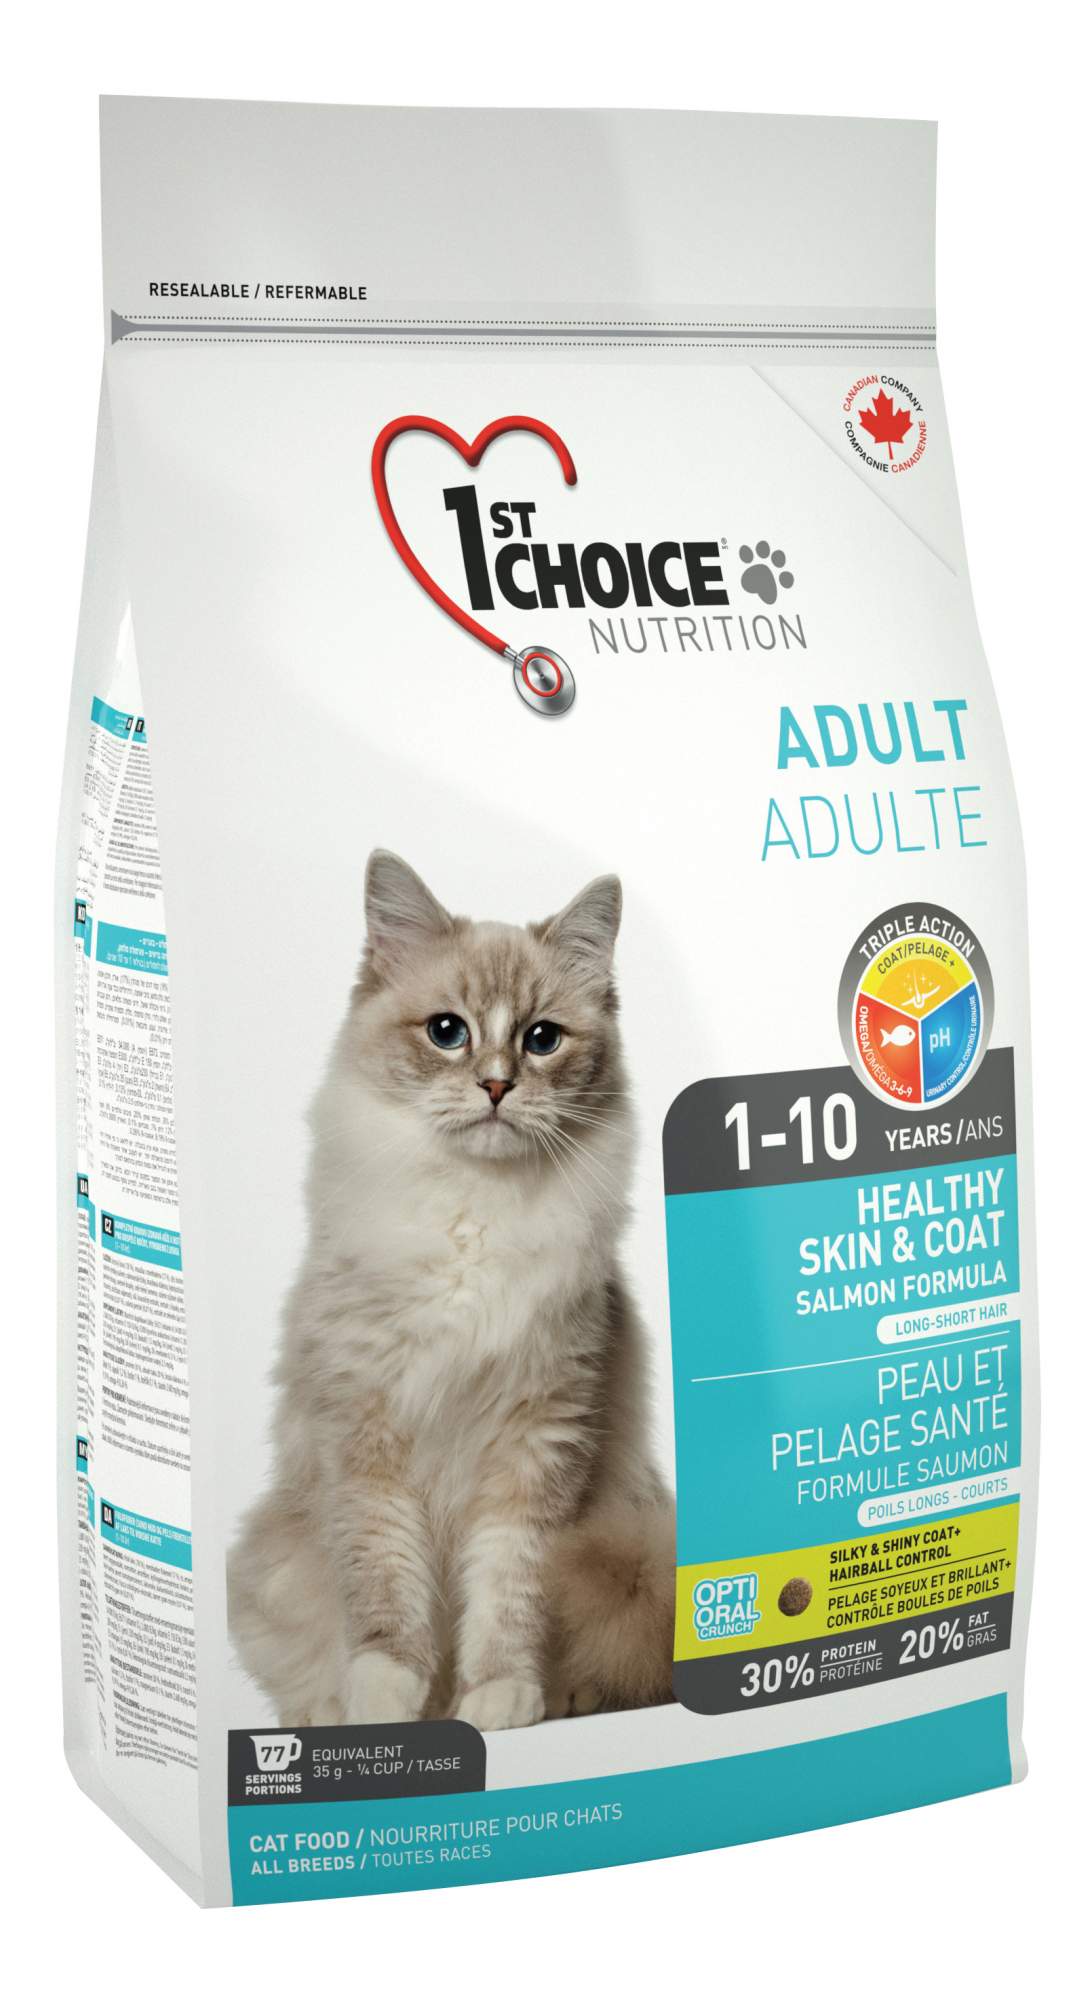 Купить сухой корм для кошек 1st choice Healthy Skin&Coat, здоровая шерсть и кожа, лосось, 2,72кг, цены на Мегамаркет | Артикул: 100001277684